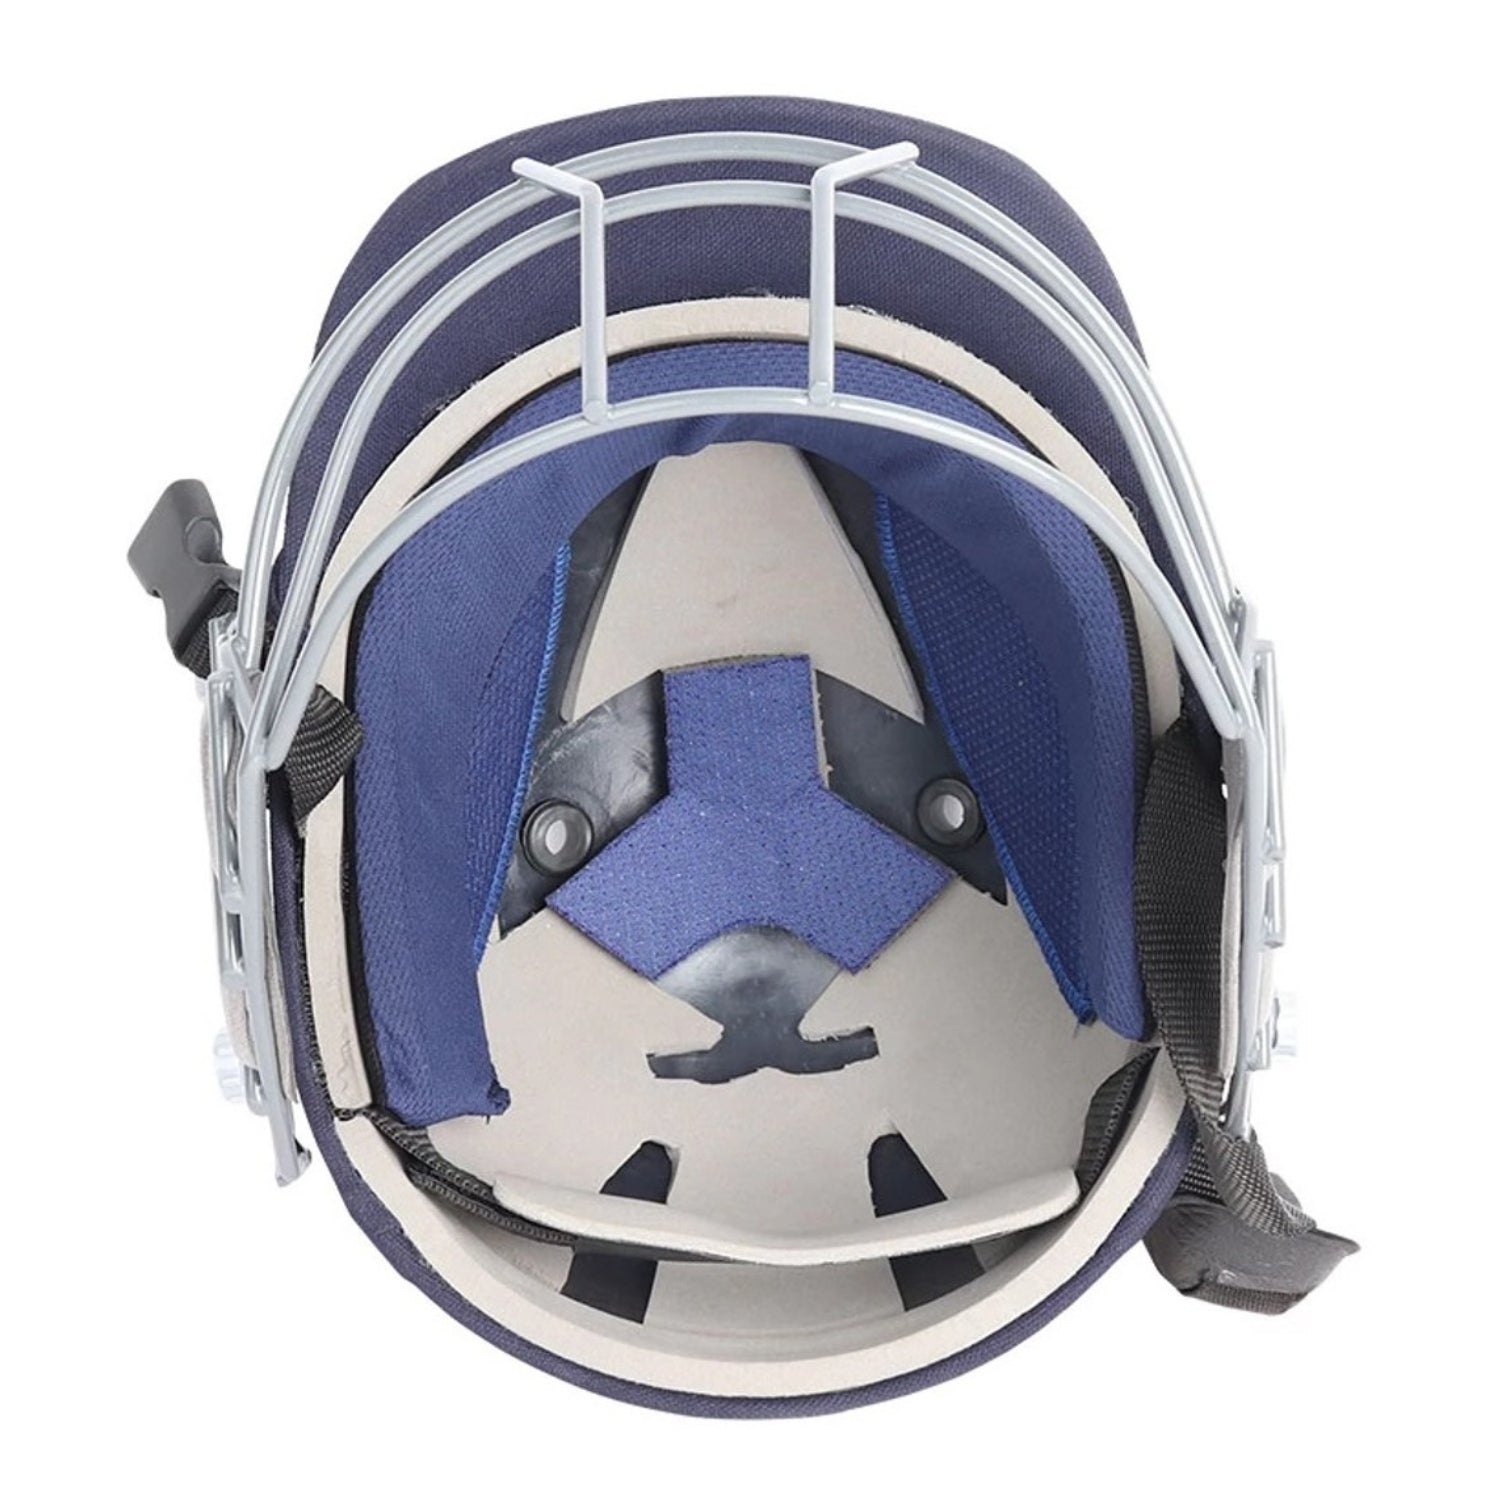 Shrey Batting Helmet, Model Star Junior, Navy Blue, S, M, L, XL